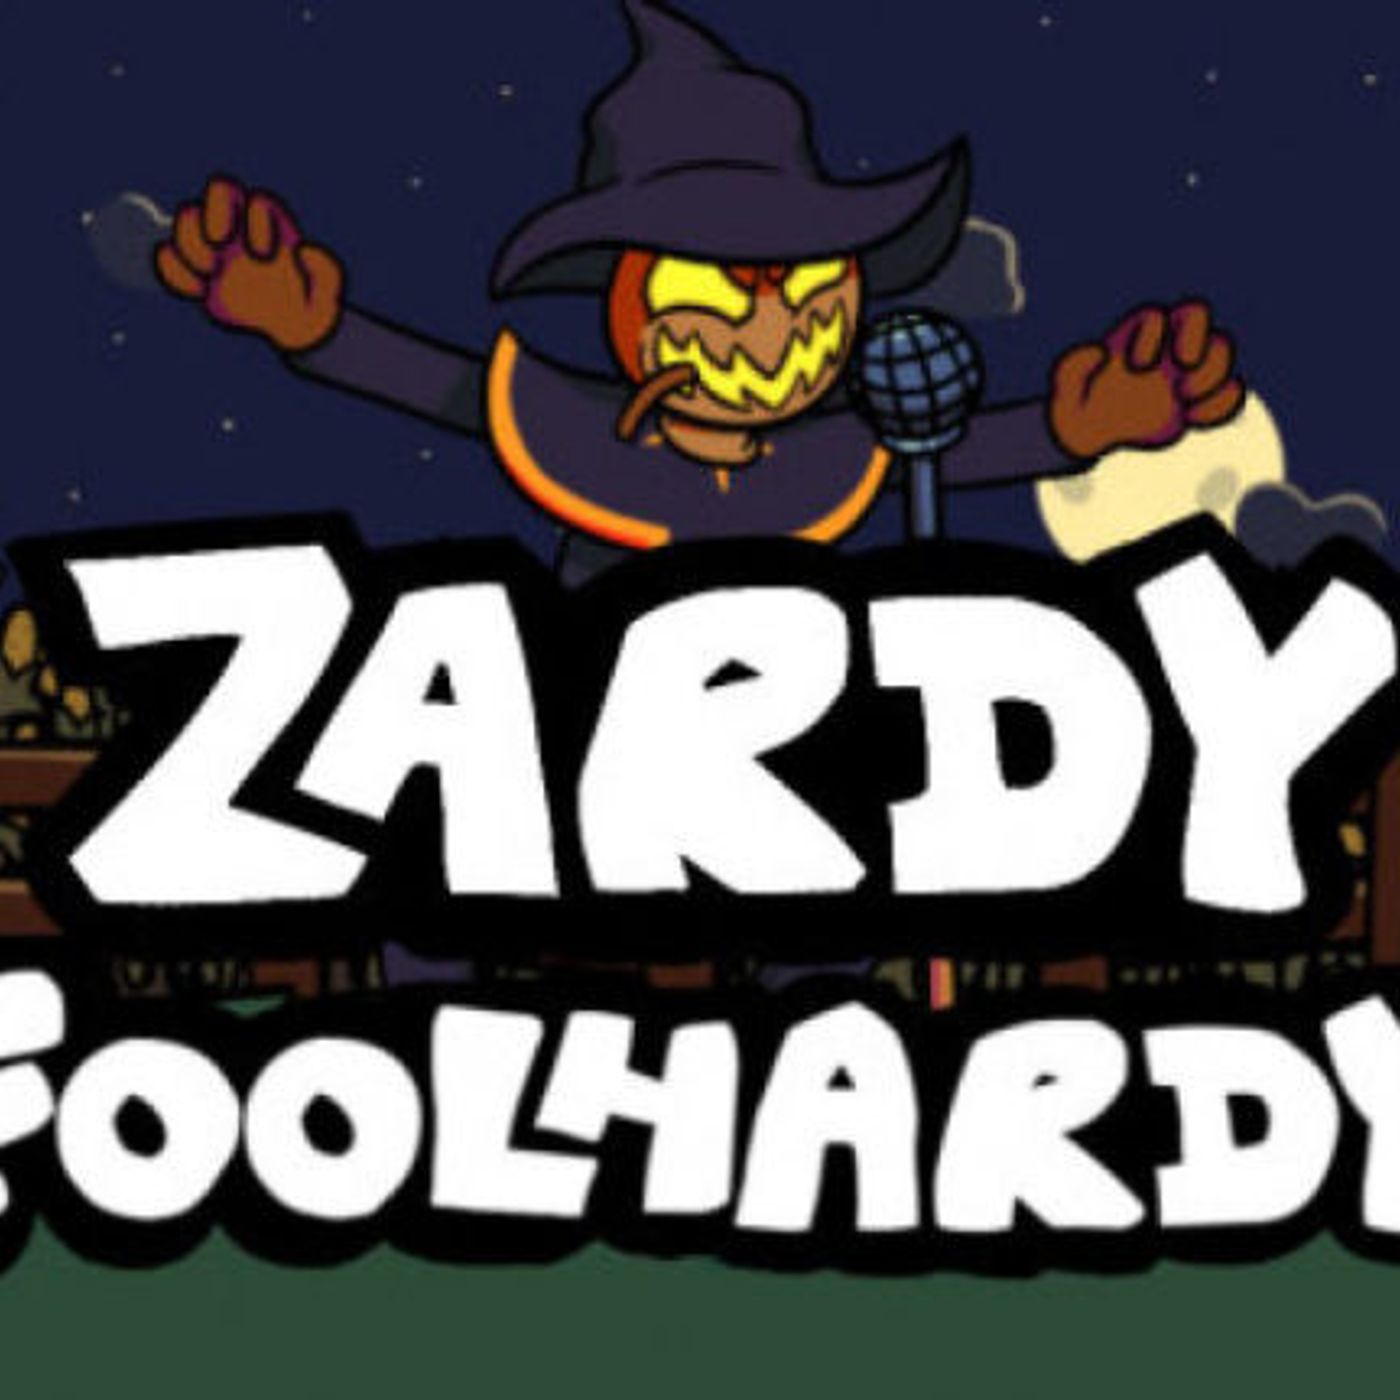 Foolhardy - Zardy FNF